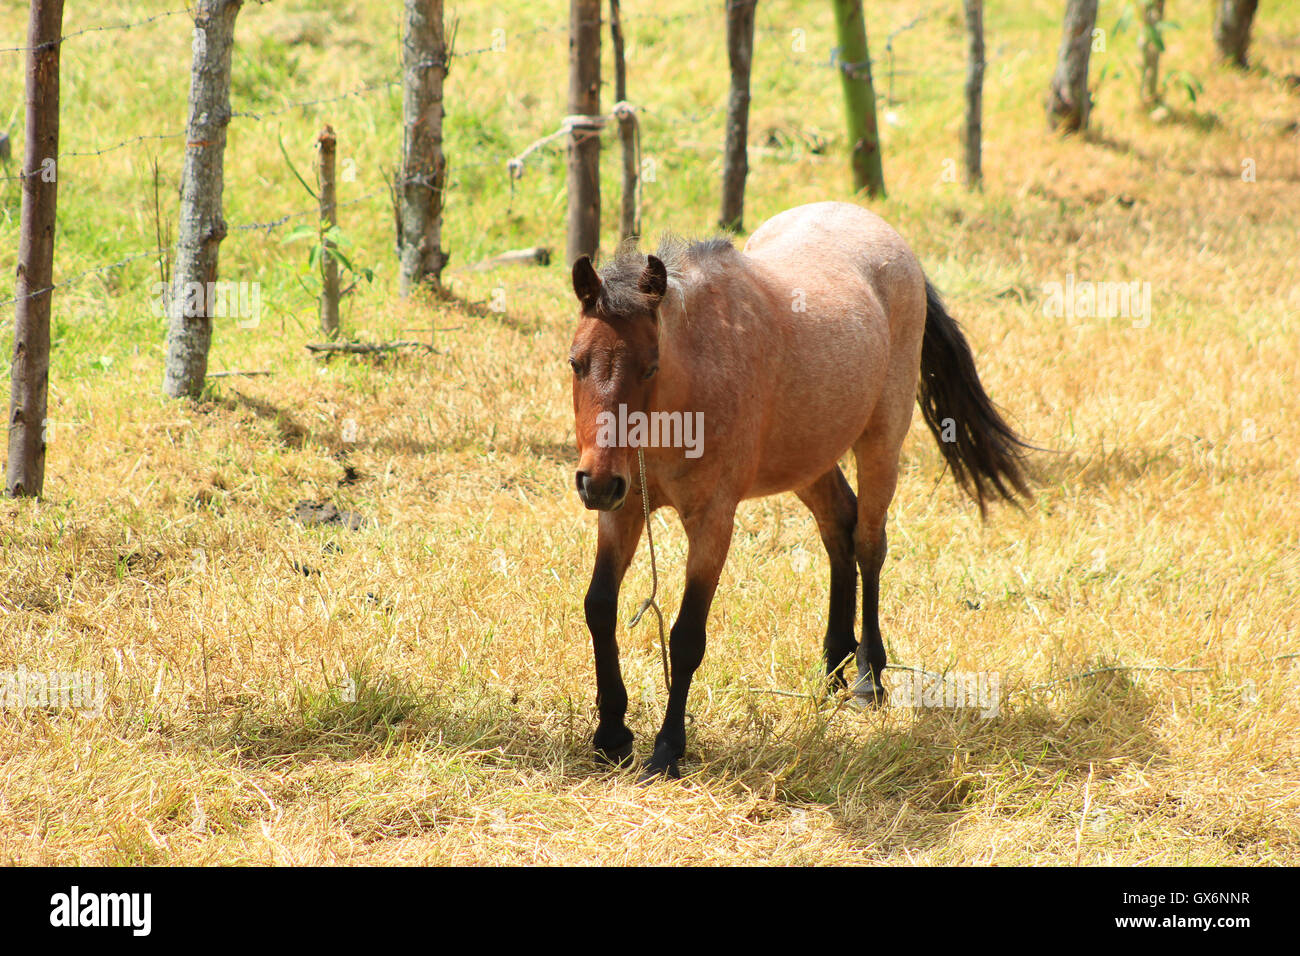 A horse in a pasture on a farm in Cotacachi, Ecuador Stock Photo